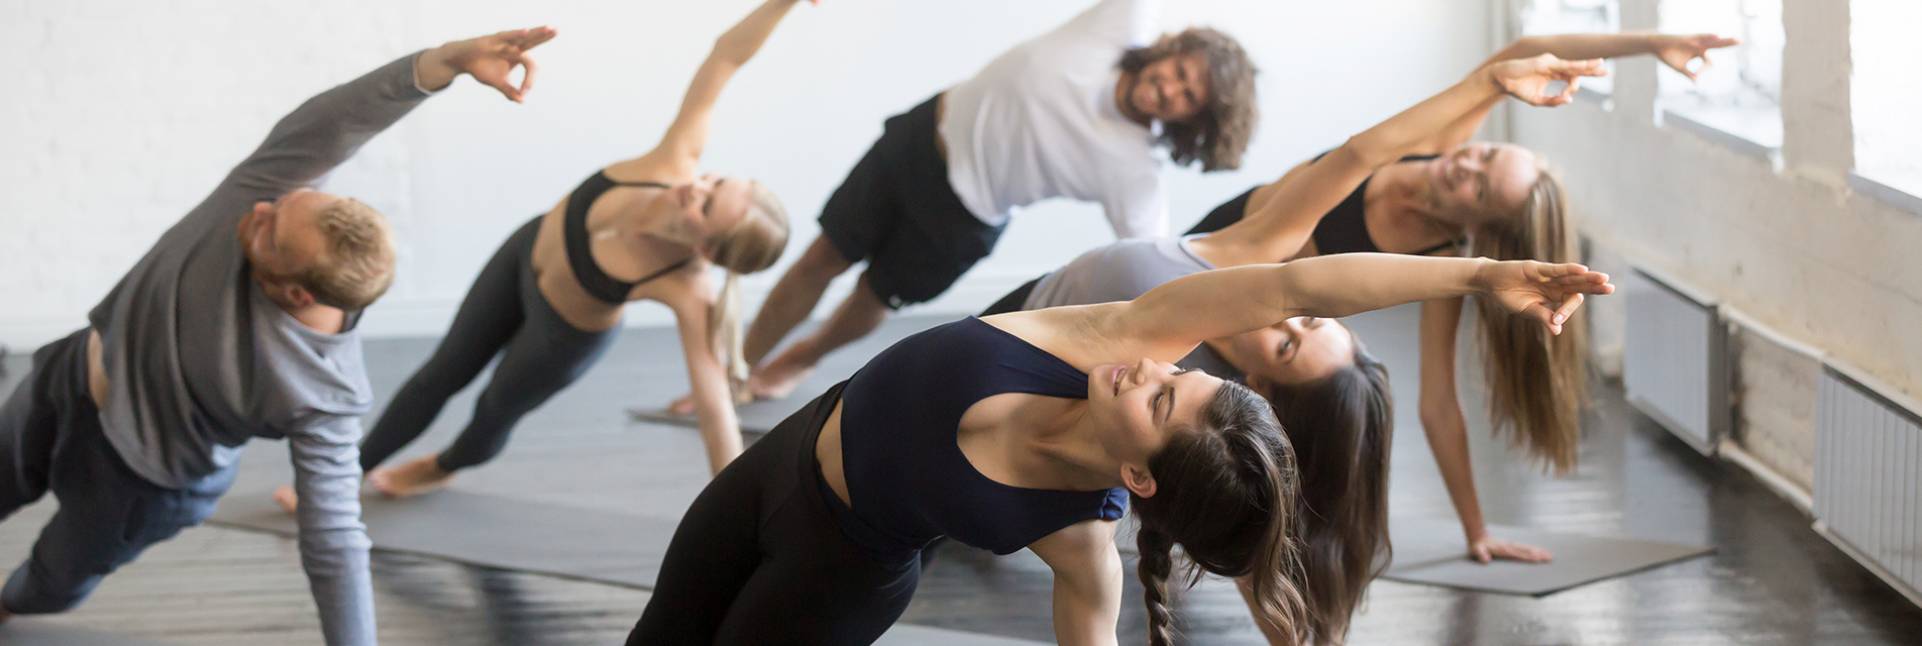 Cómo mejorar la fuerza muscular gracias al yoga